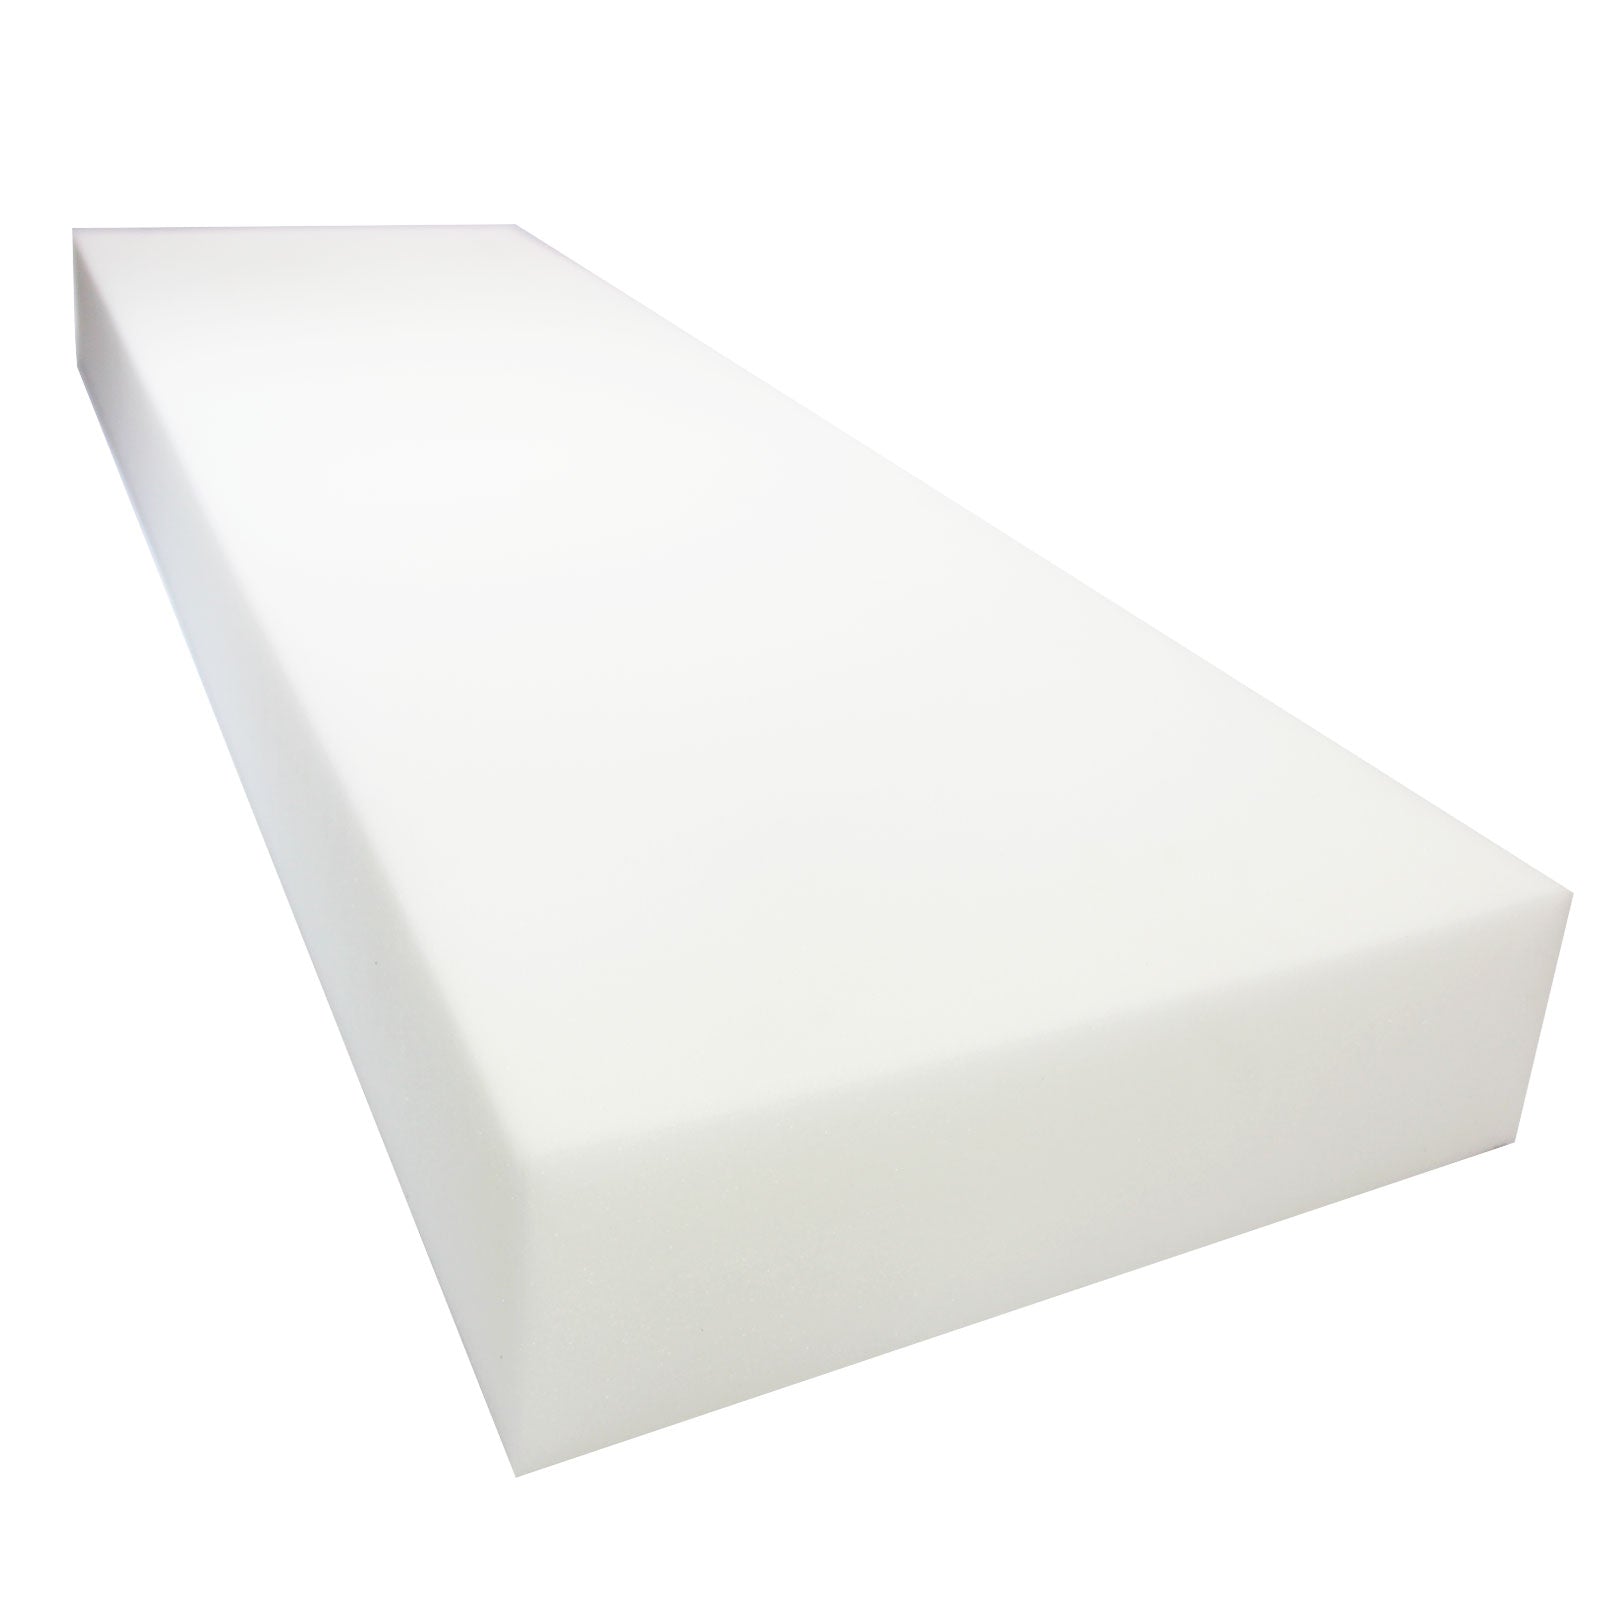 Airtex 5 x 24 High Density Foam Sheet